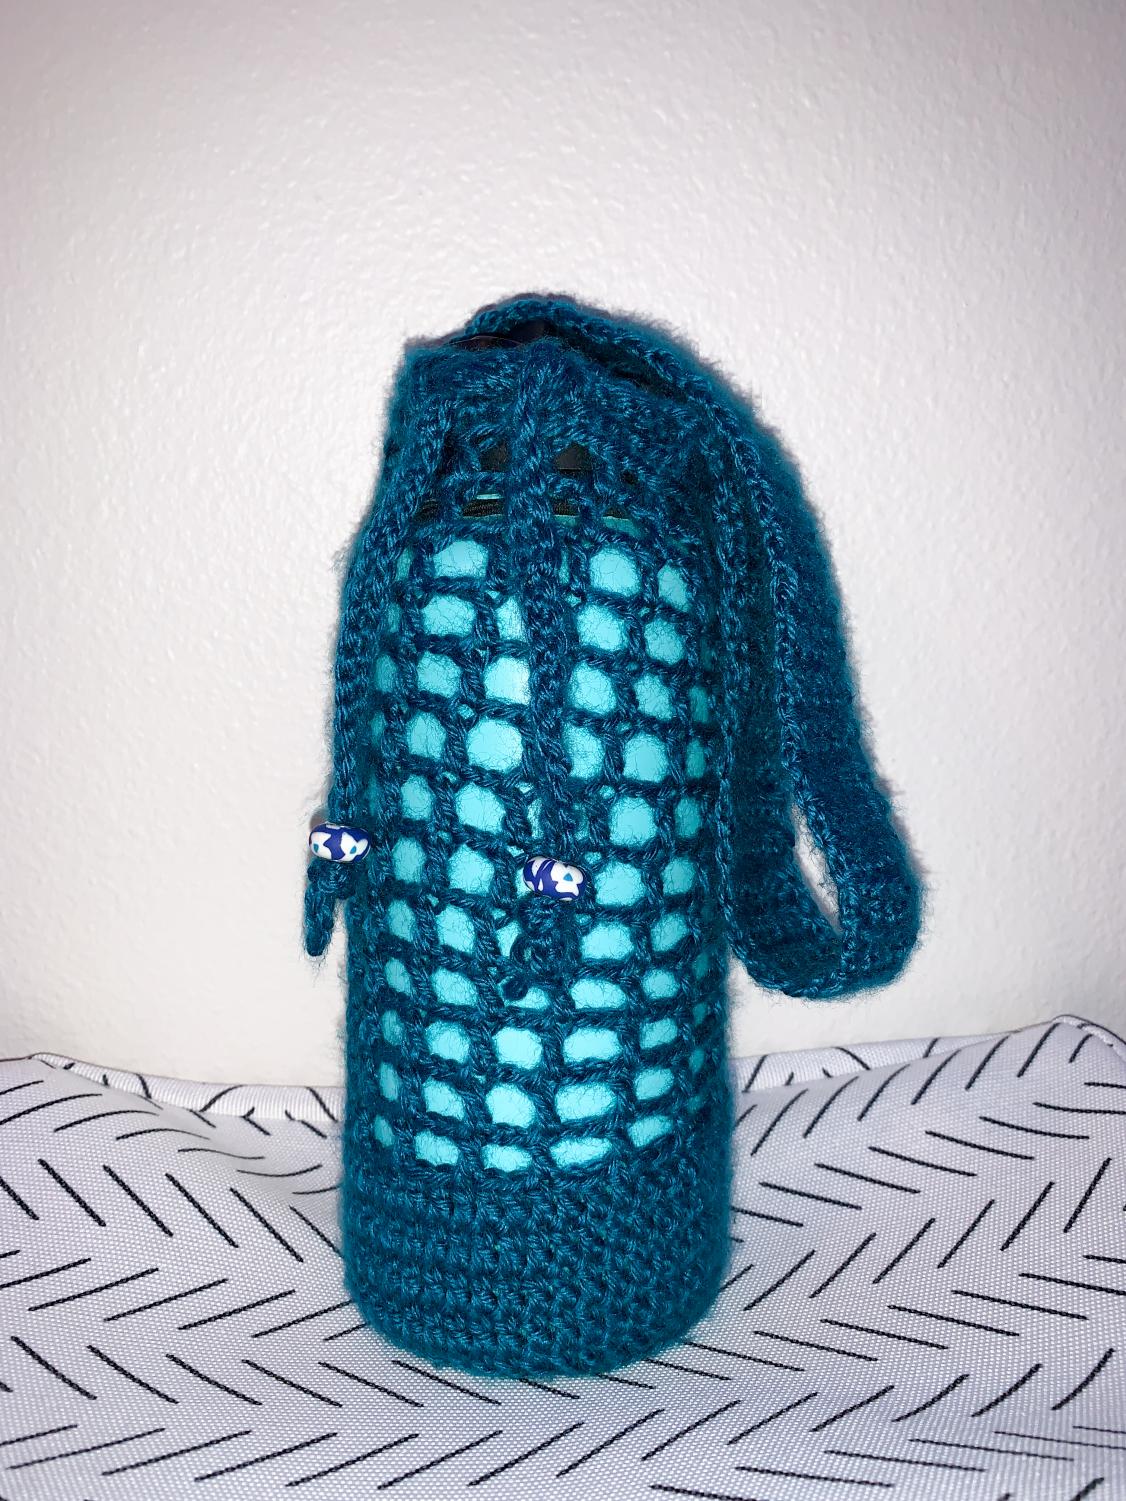 Crochet Water Bottle Holder - Crochet 365 Knit Too